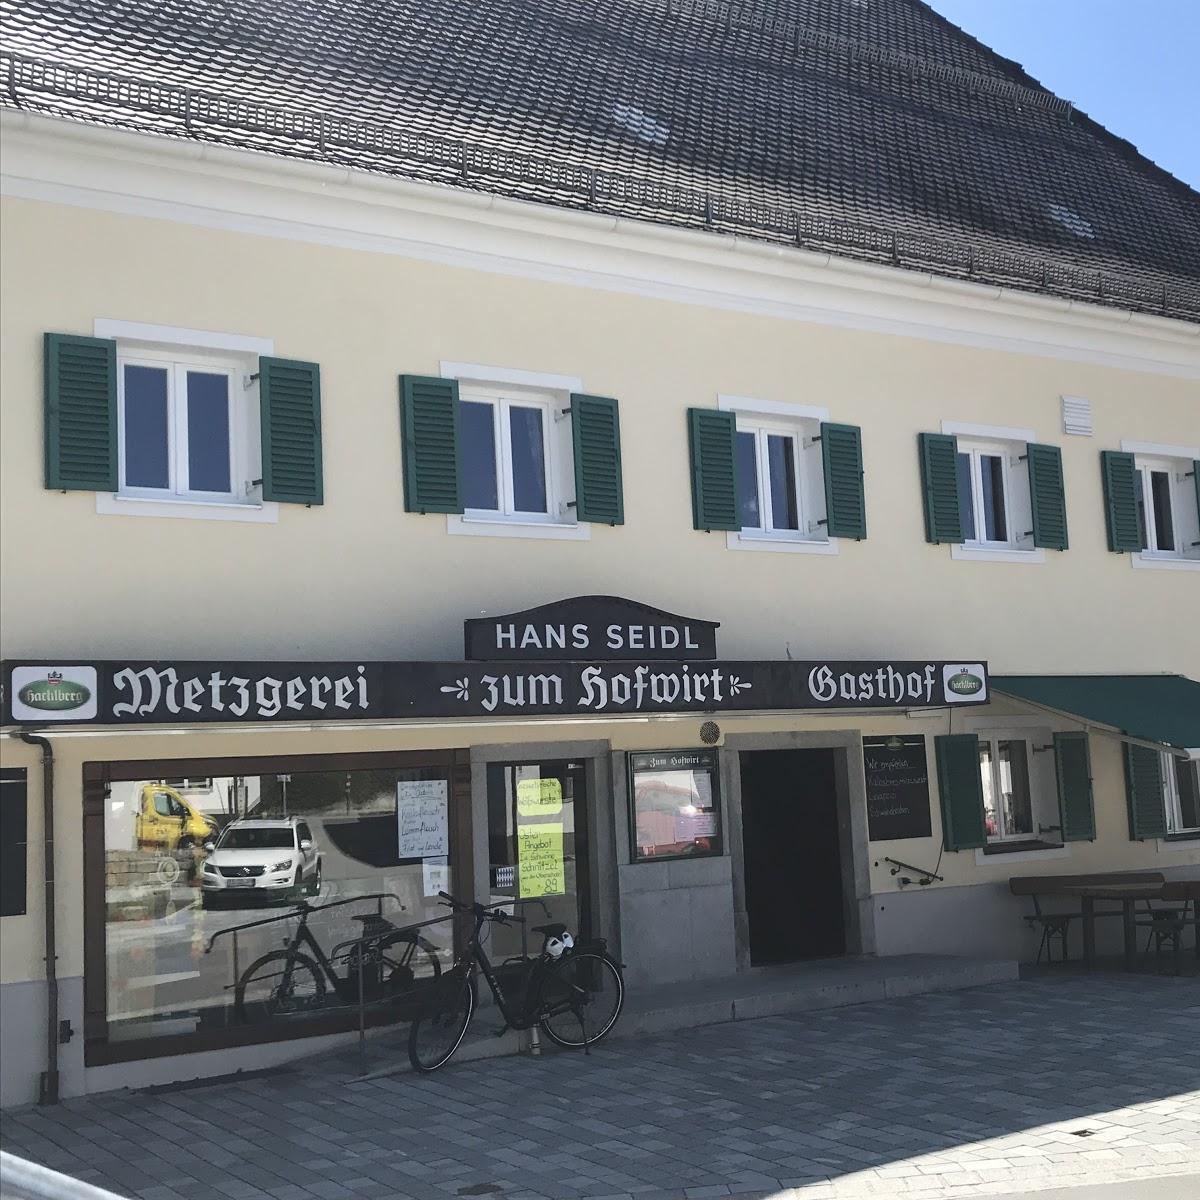 Restaurant "Gasthof Zum Hofwirt - Familie Hans Seidl" in  Windorf